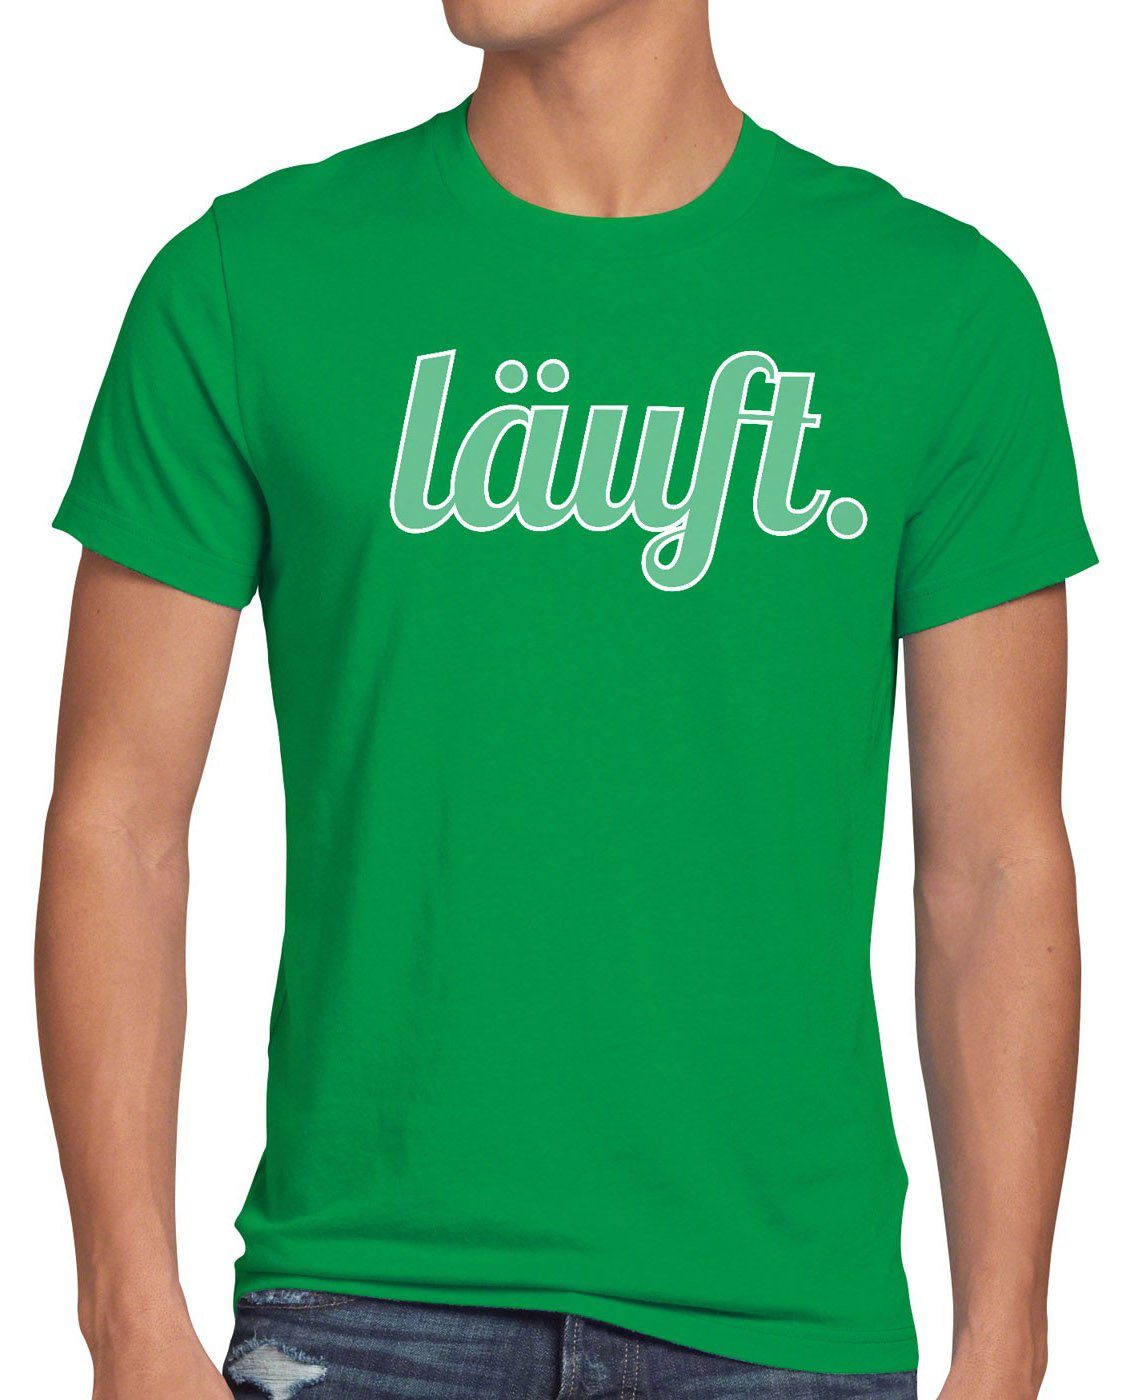 style3 Print-Shirt Herren T-Shirt läuft Funshirt Spruchshirt Shirt Fun bei dir meme kult mir top grün